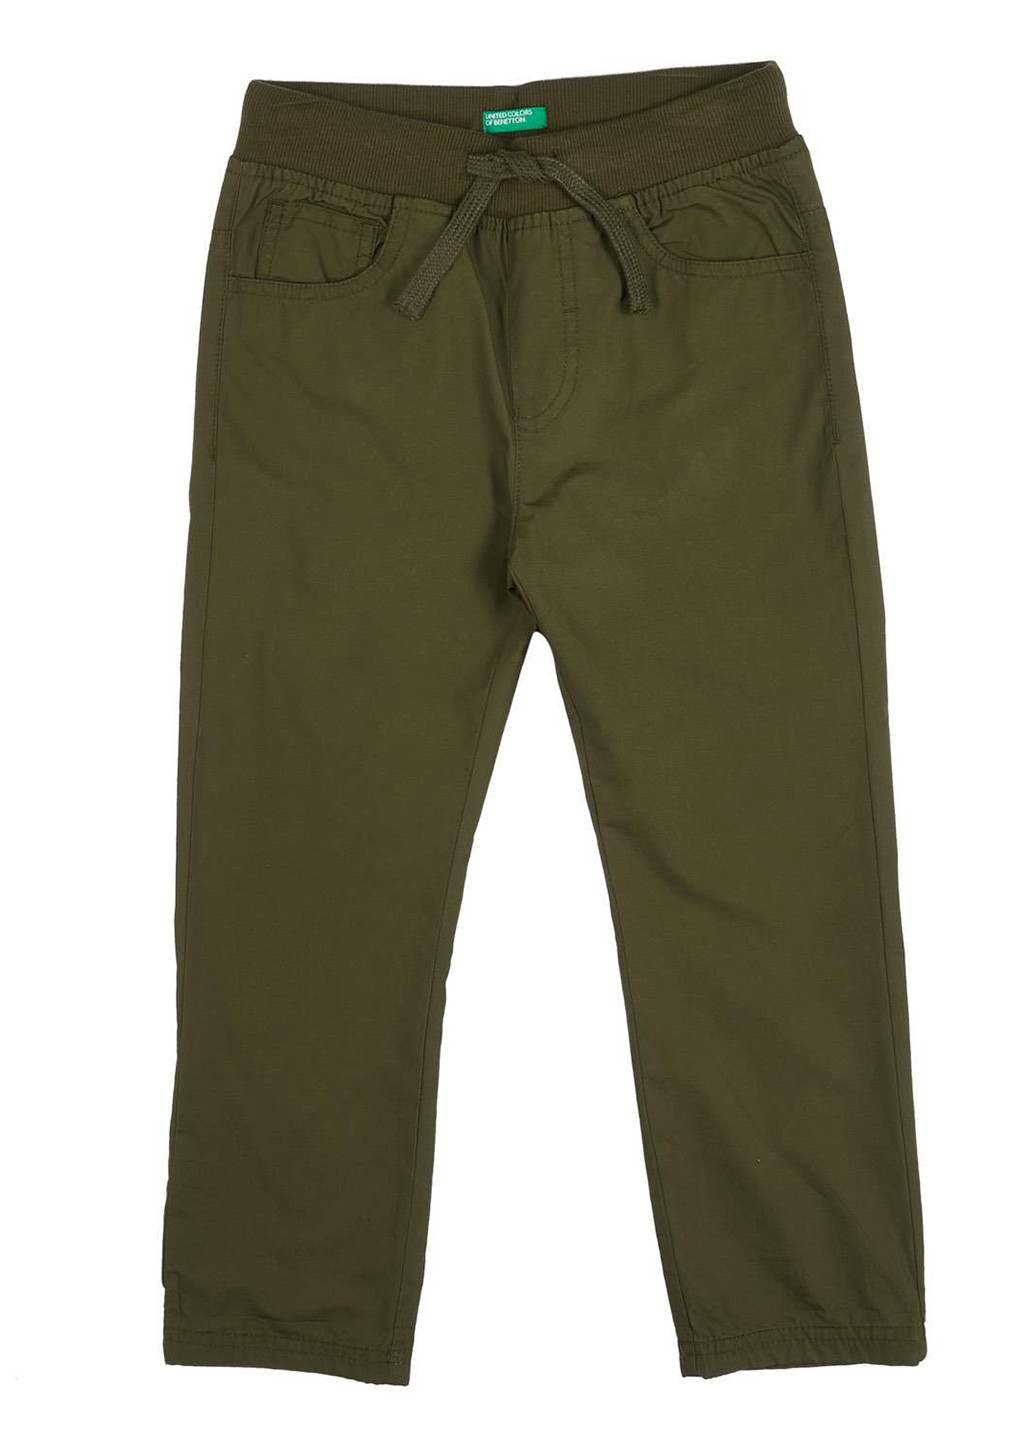 Хаки классические демисезонные брюки прямые United Colors of Benetton